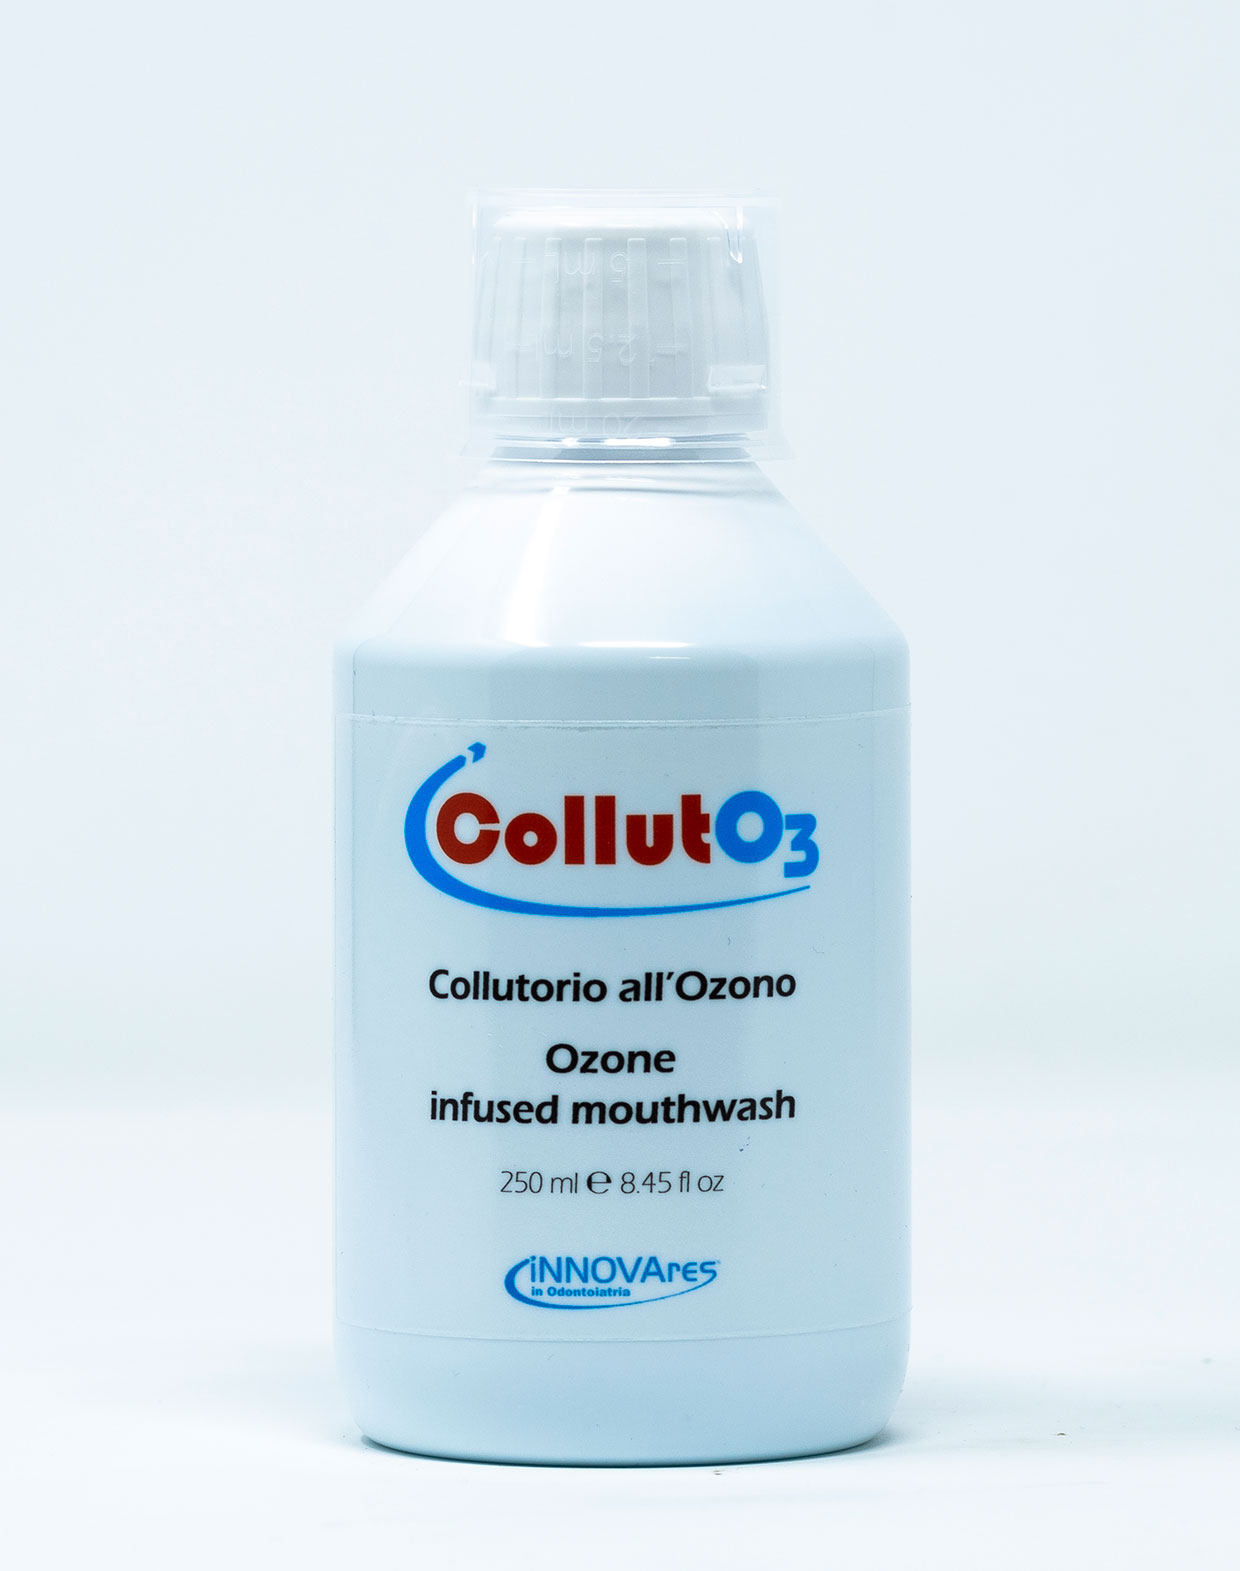 CollutO3 Collutorio all’Ozono – 250 ml